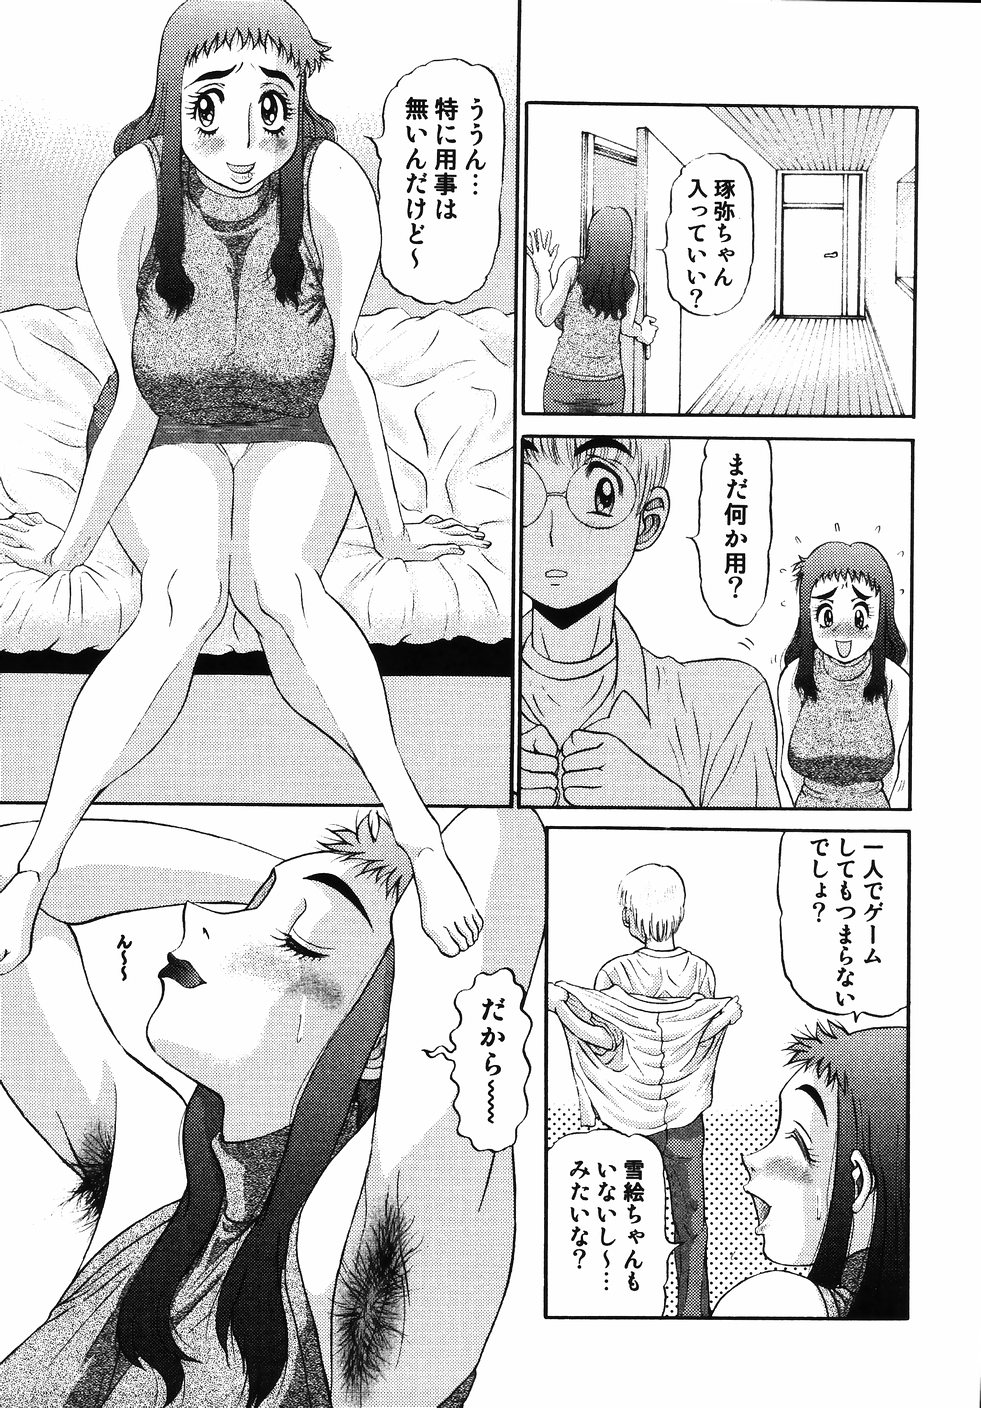 [PJ-1] Nozomi 2 page 43 full